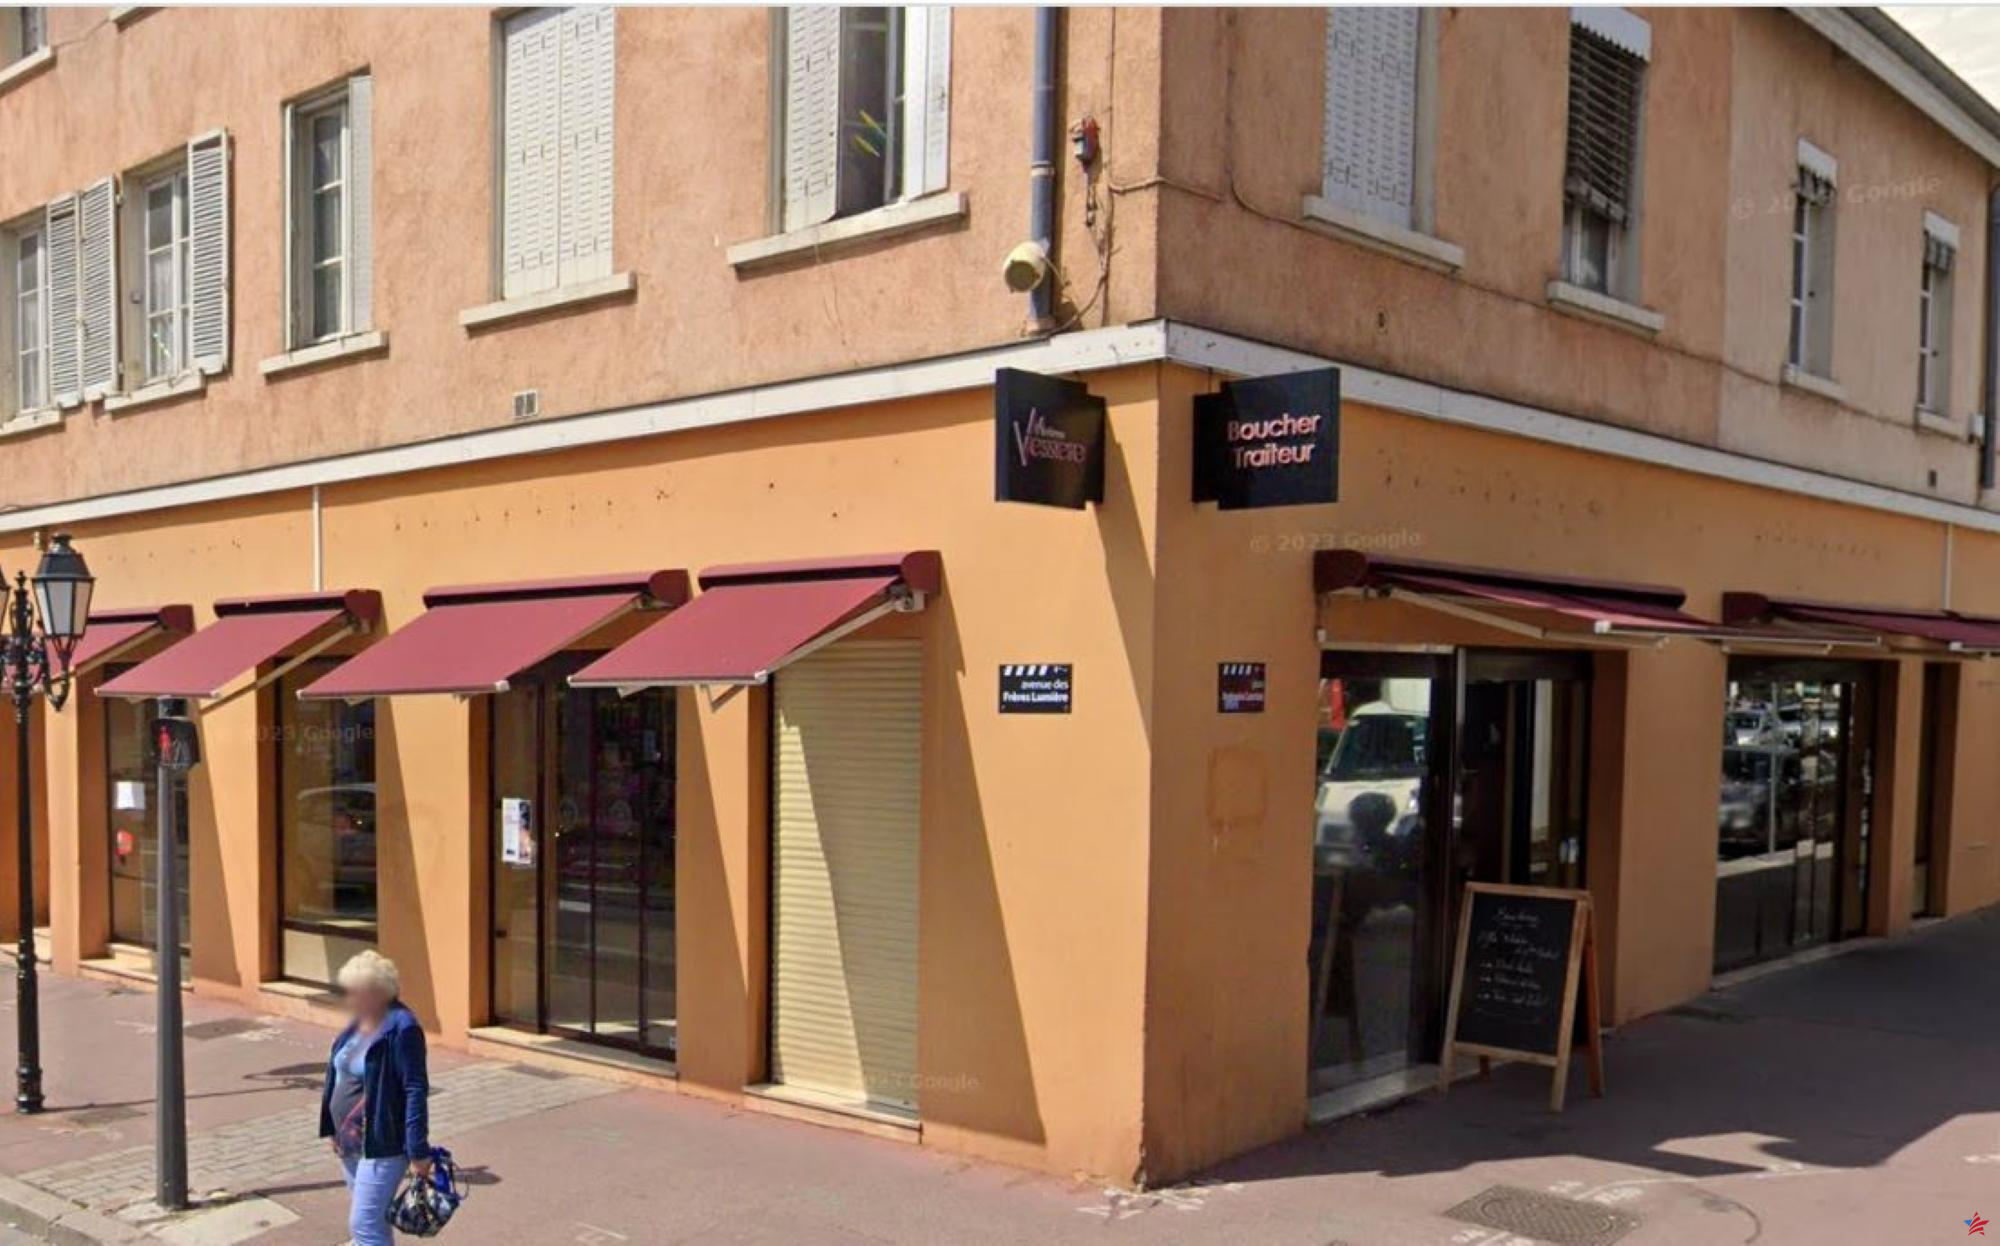 Cucarachas y excrementos de rata: una institución gastronómica de Lyon cerrada por falta de higiene